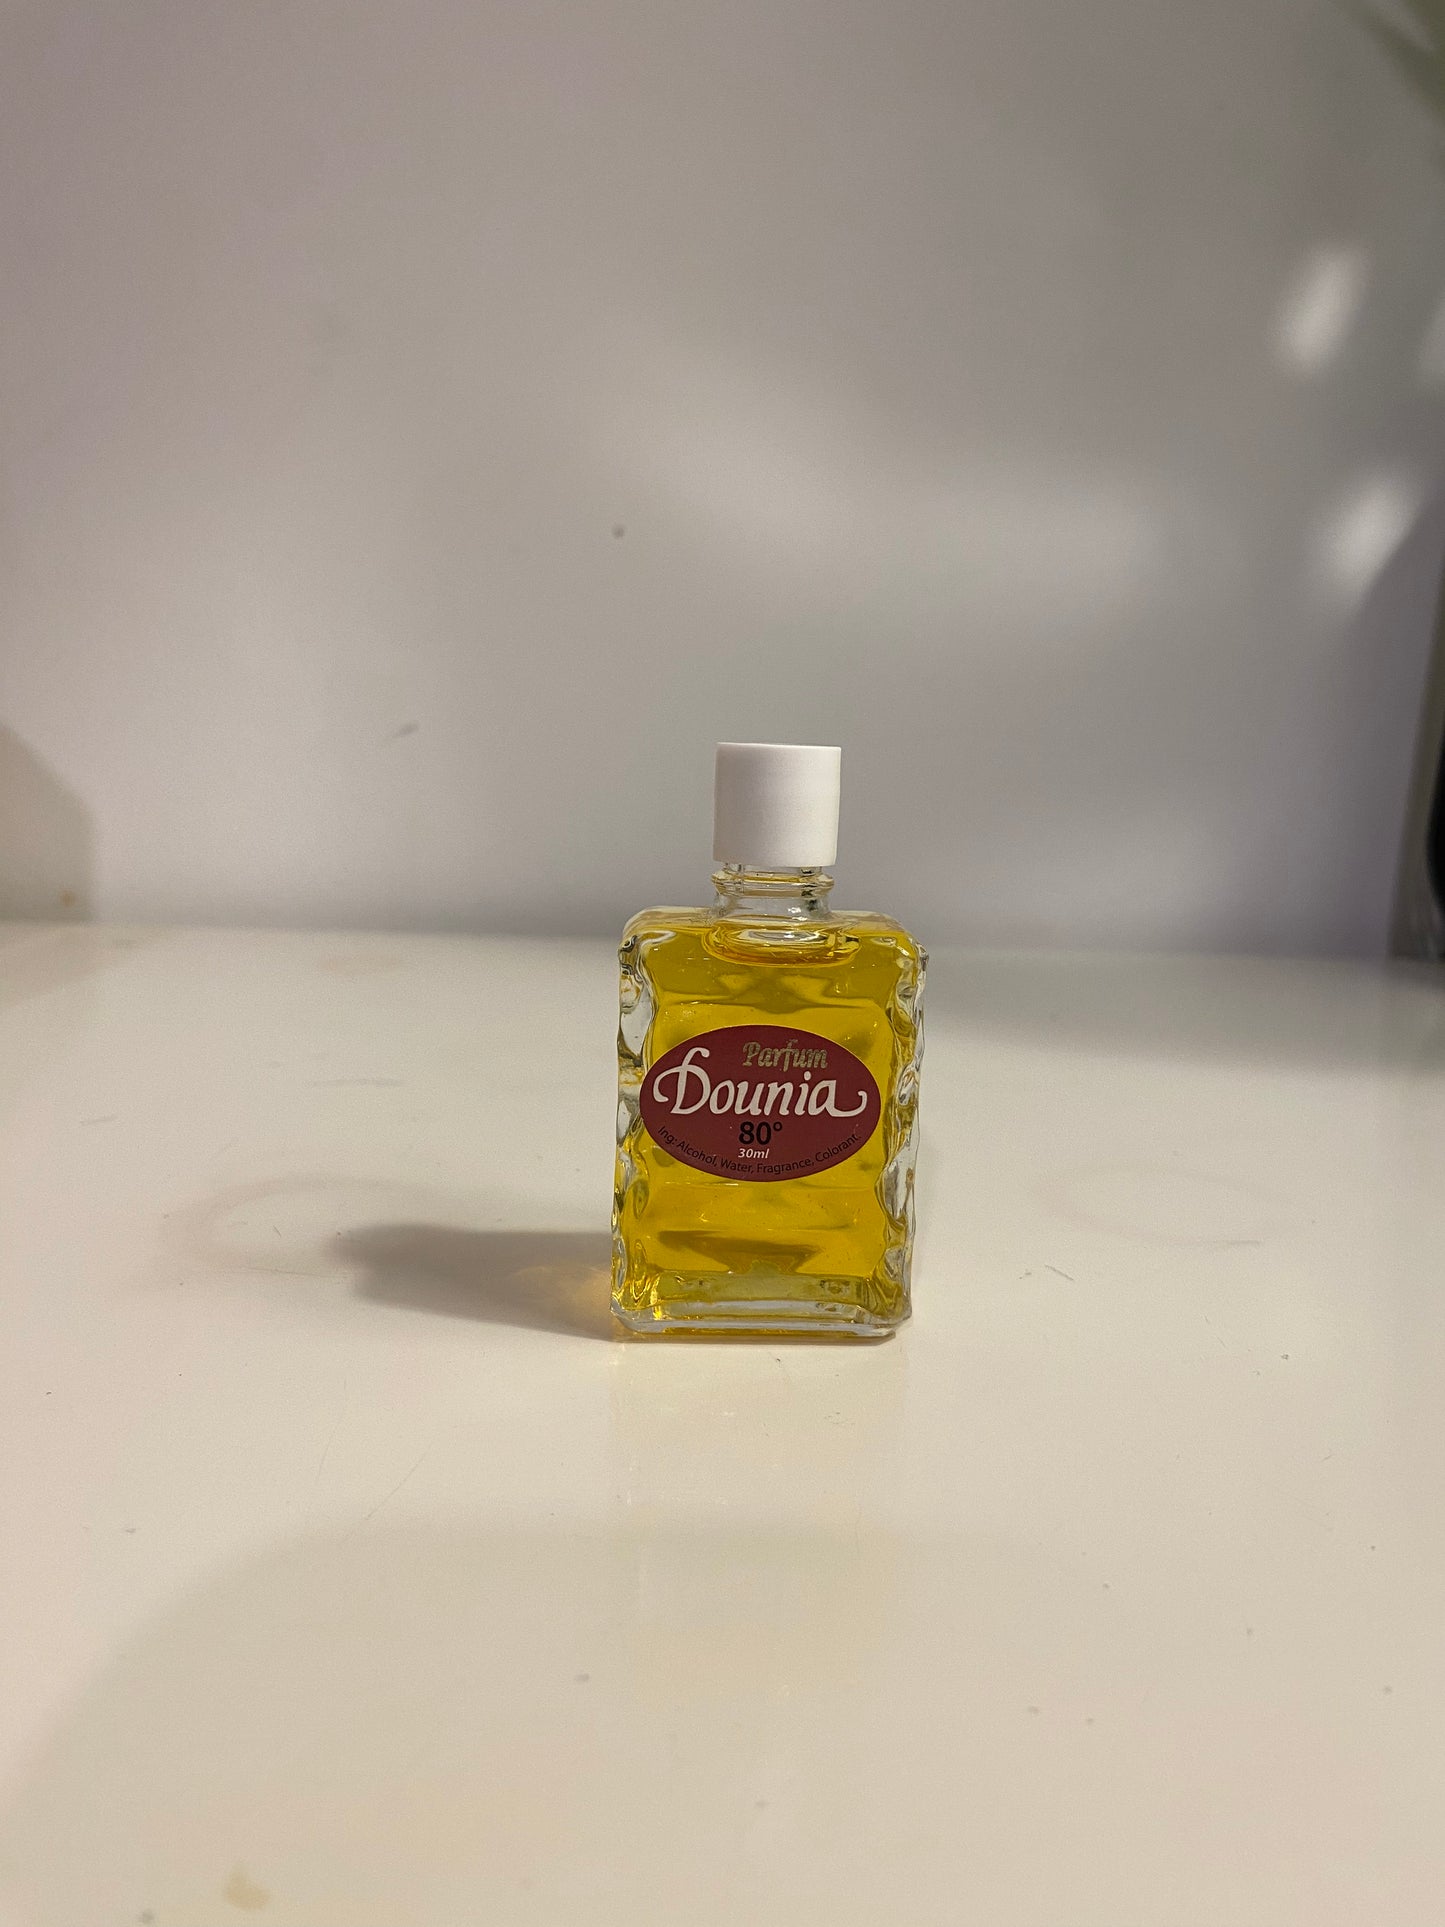 Parfums dounia